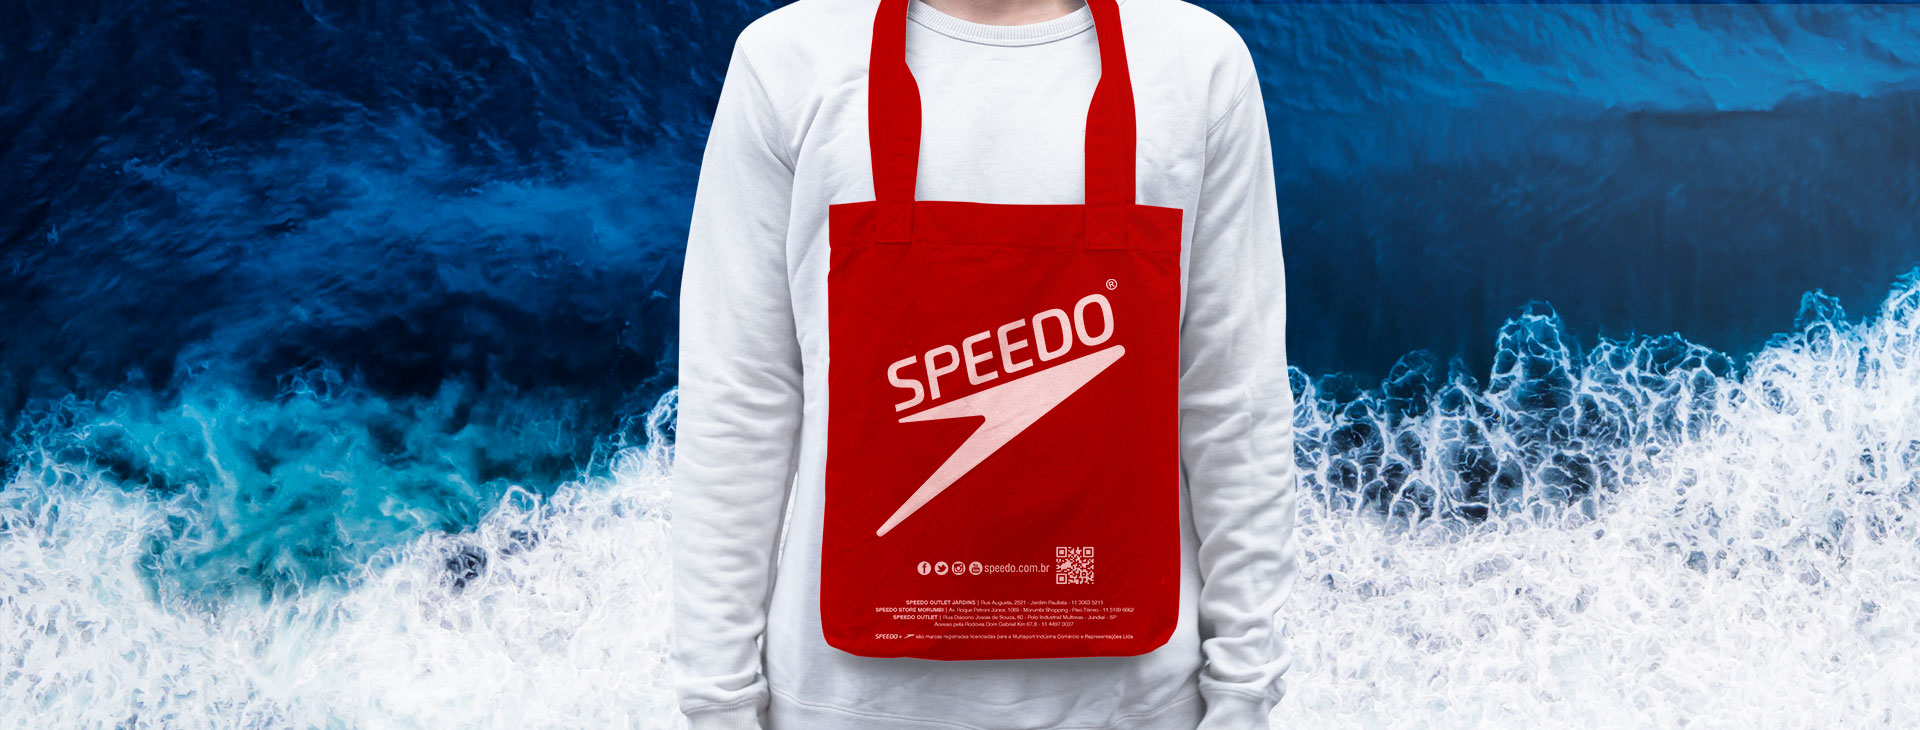 Speedo Store Online - Nossa força vem da água